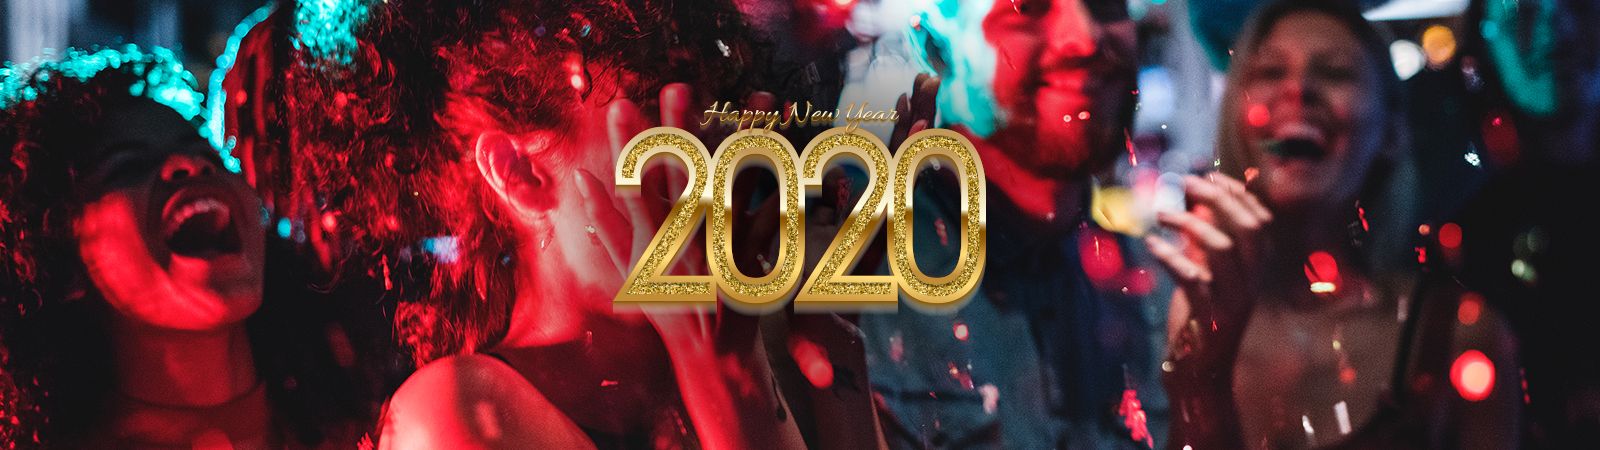 tulalip casino new years eve 2019